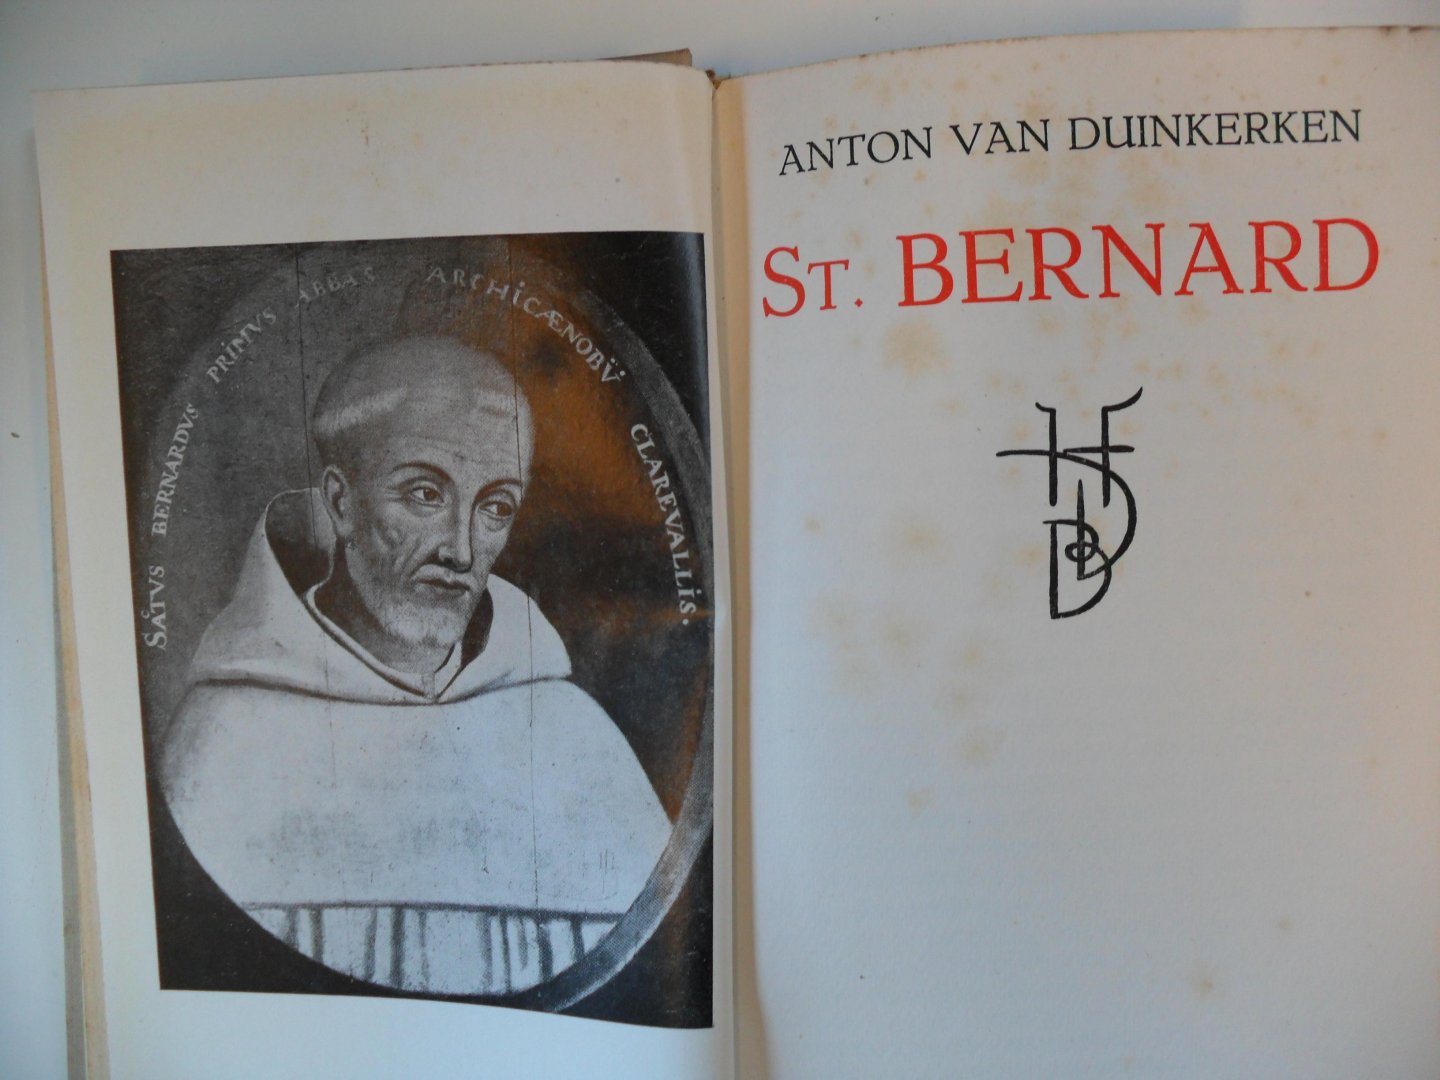 Duinkerken Anton van - Uren met St. Bernard